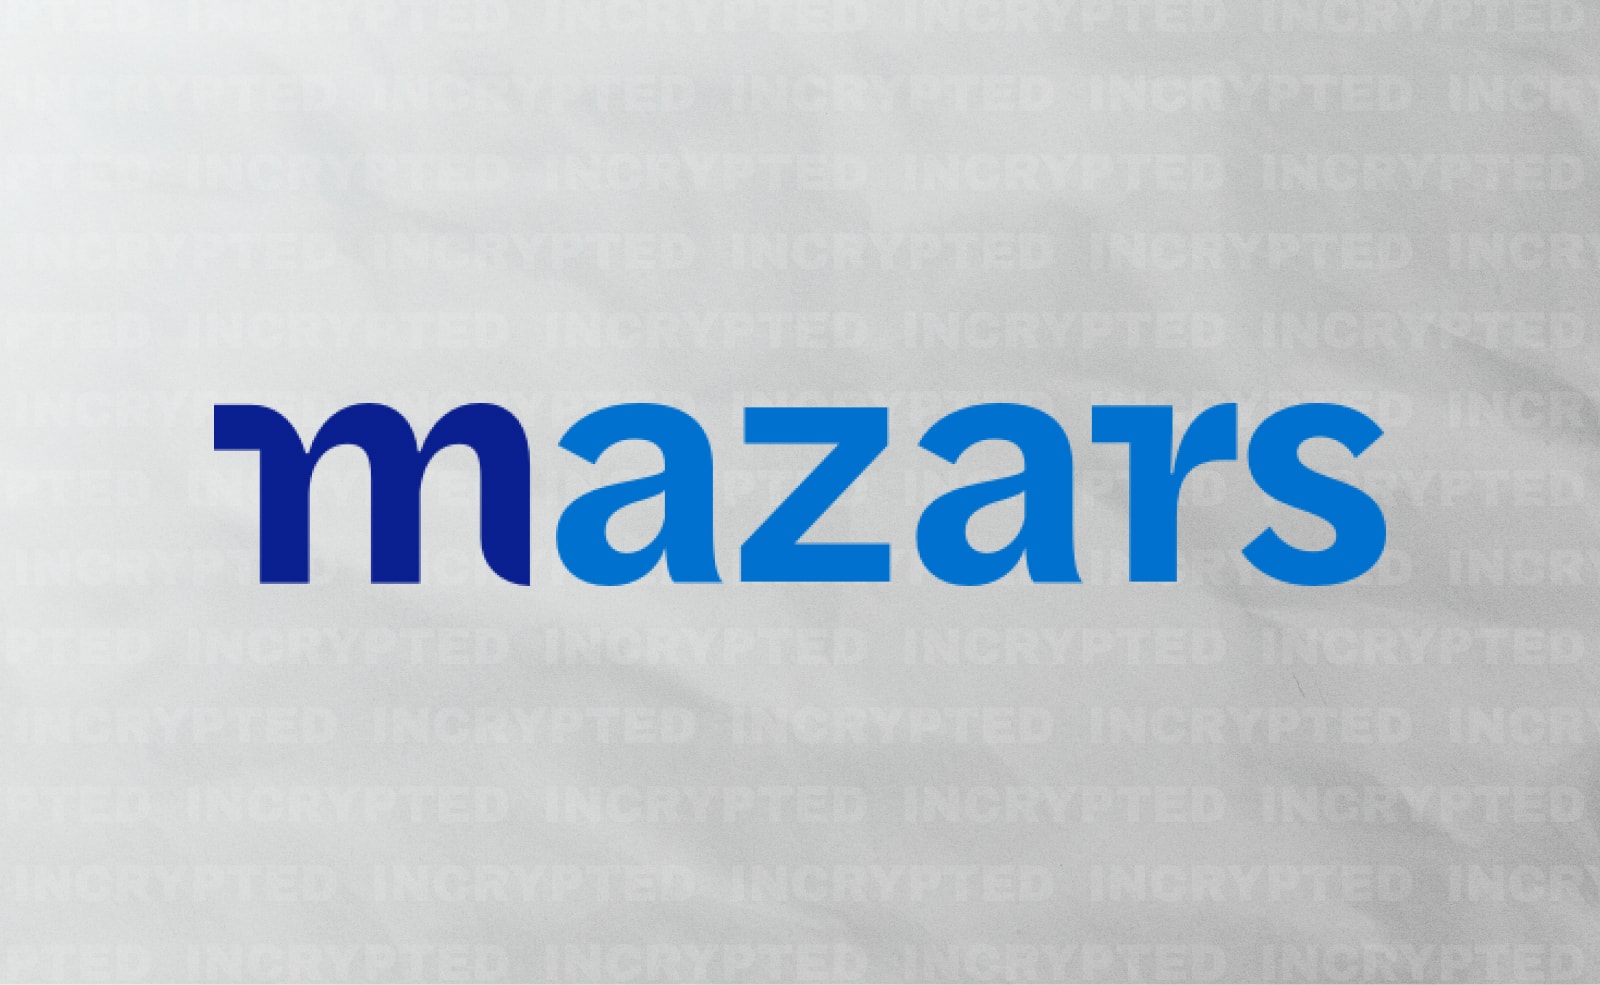 Аудиторская фирма Mazars приостановила работу с крипто-клиентами. Страница PoR-резервов Binance «лежит». Заглавный коллаж новости.